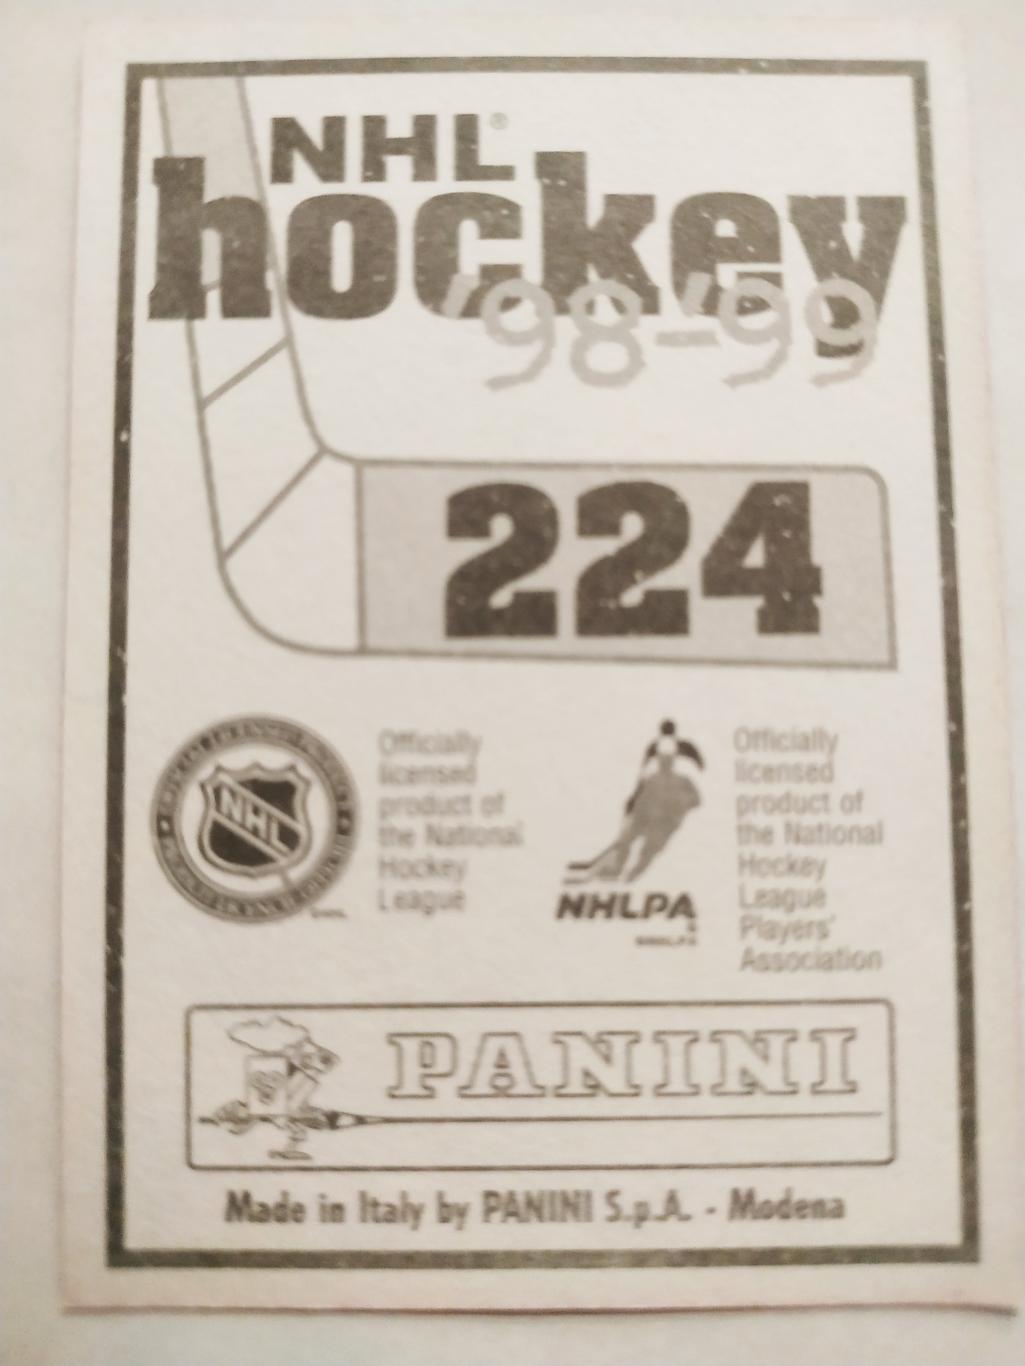 ХОККЕЙ НАКЛЕЙКА НХЛ ПАНИНИ 1998-1999 КОЛЛЕКЦИЯ NHL PANINI ROB BLAKE #224 1